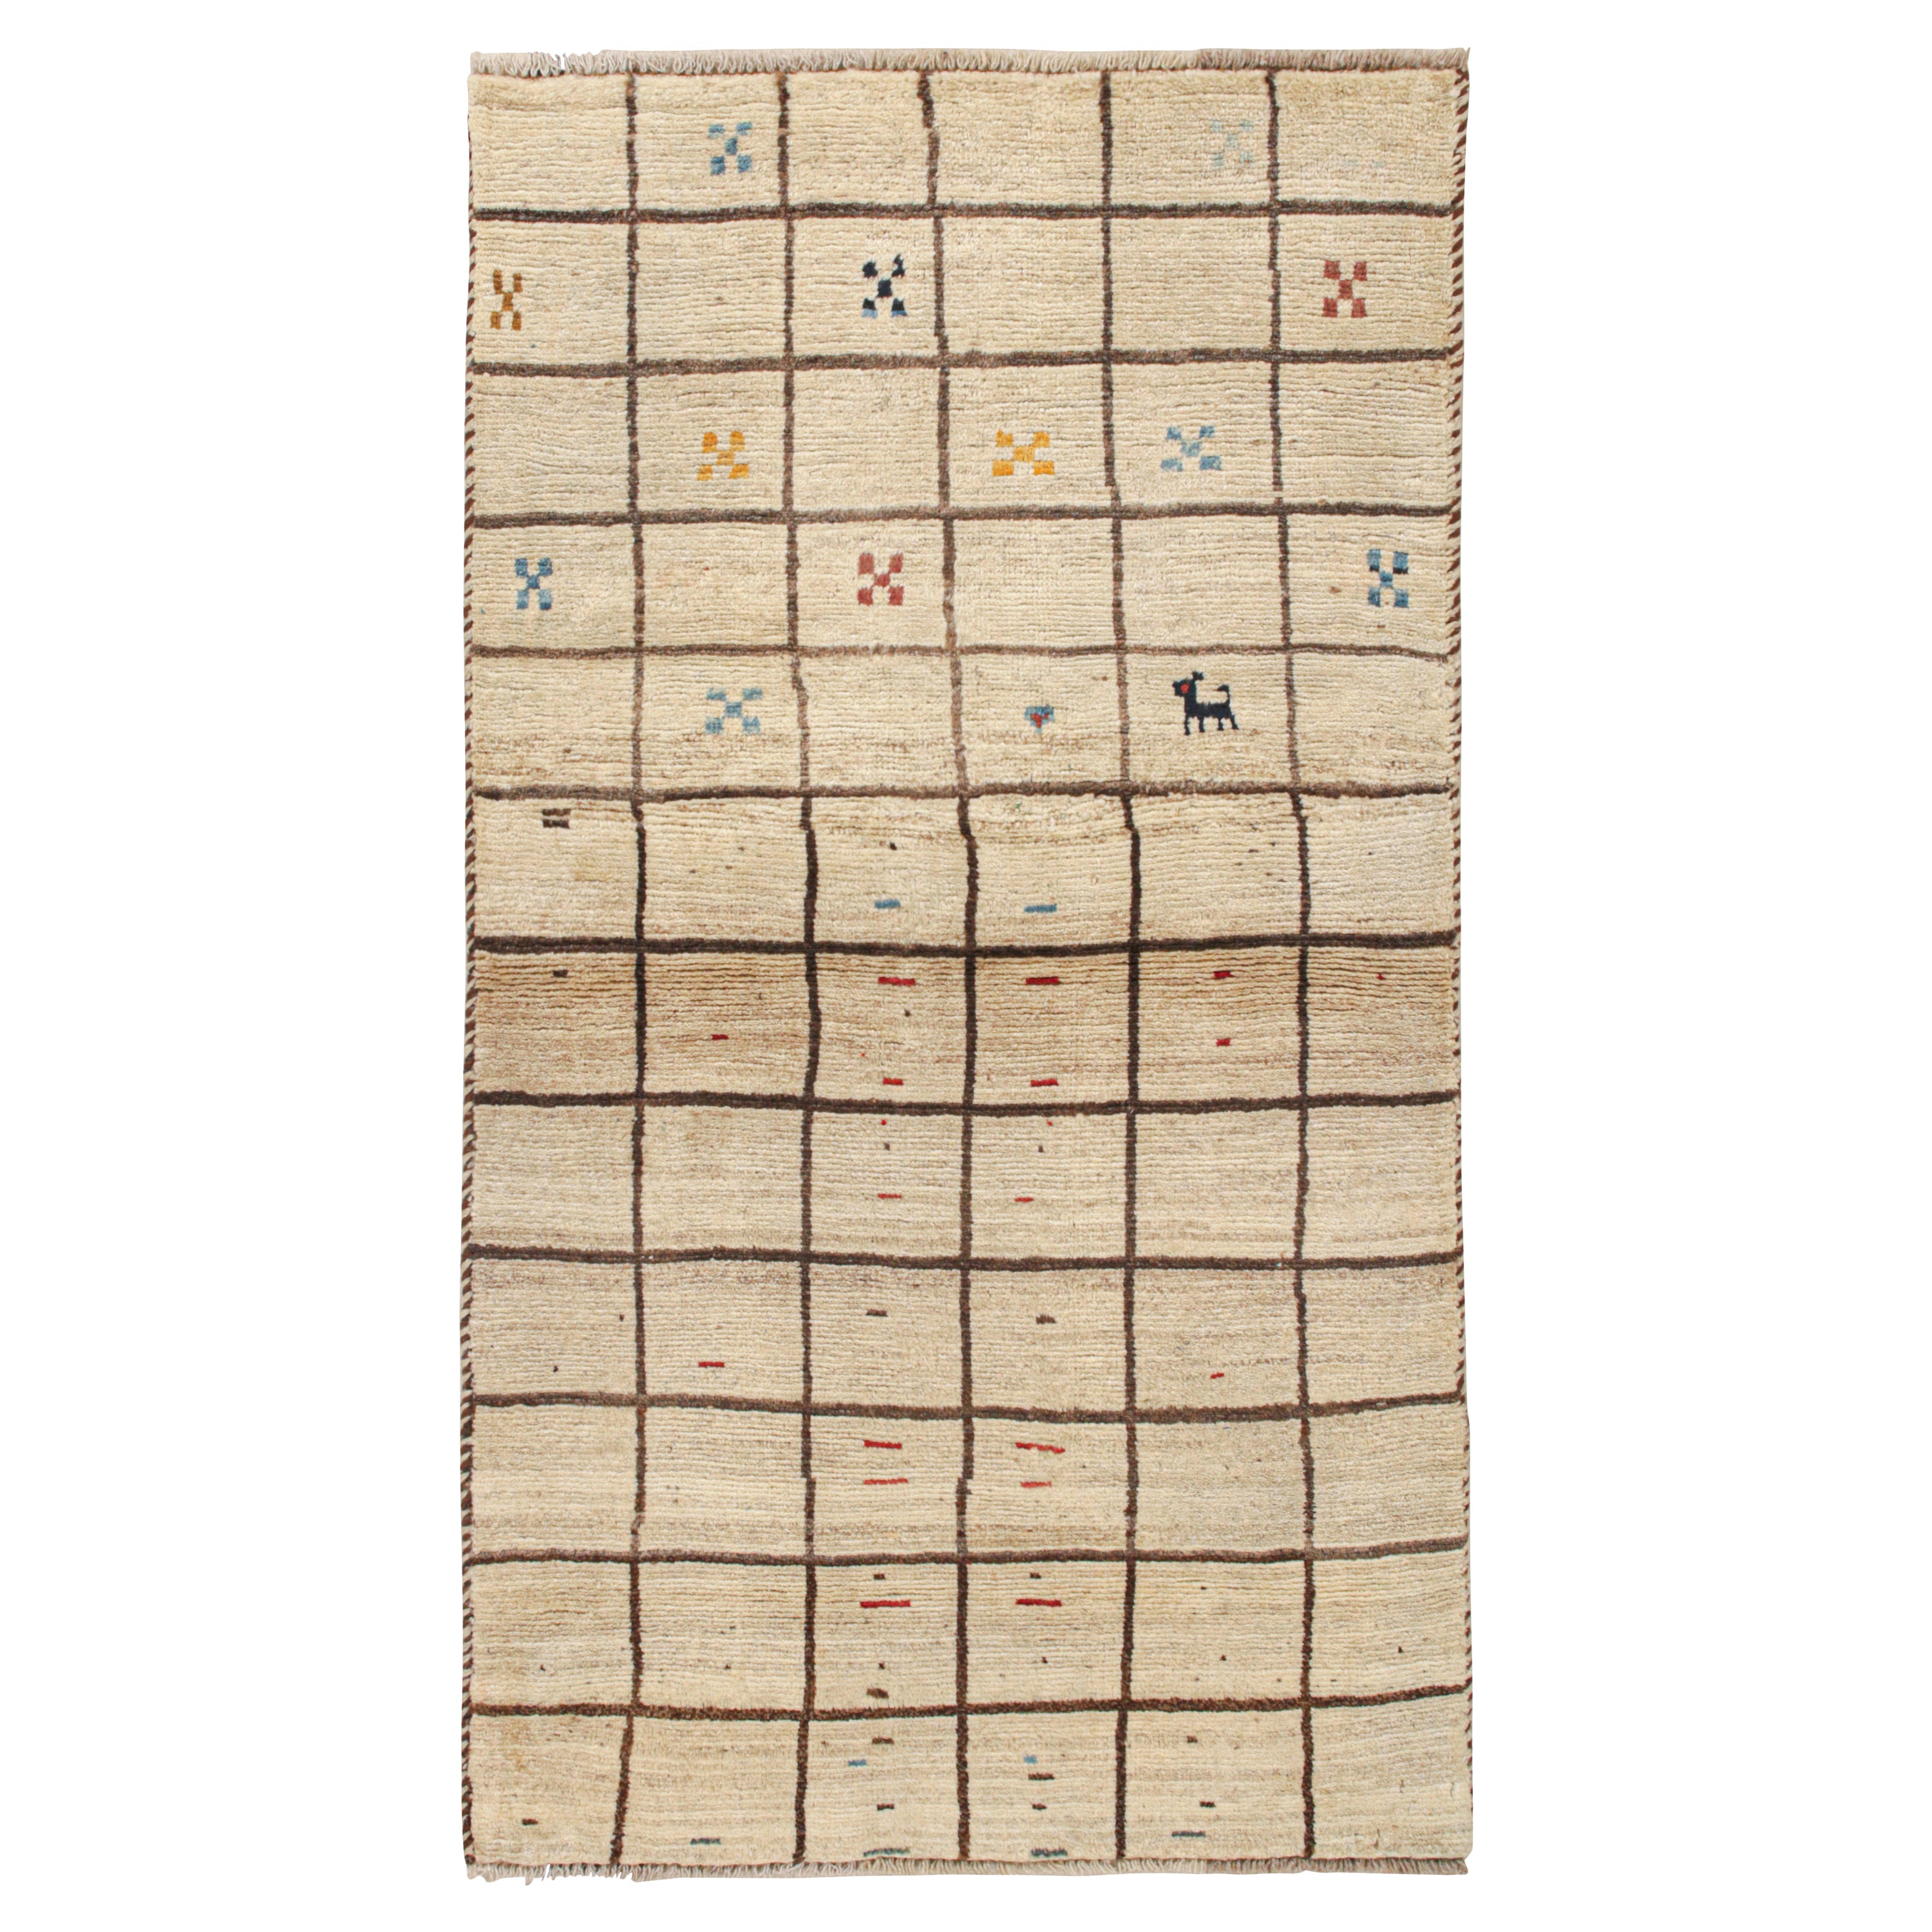 Vintage Qashqai Persian Gabbeh Rug in Beige-Brown Grid Pattern